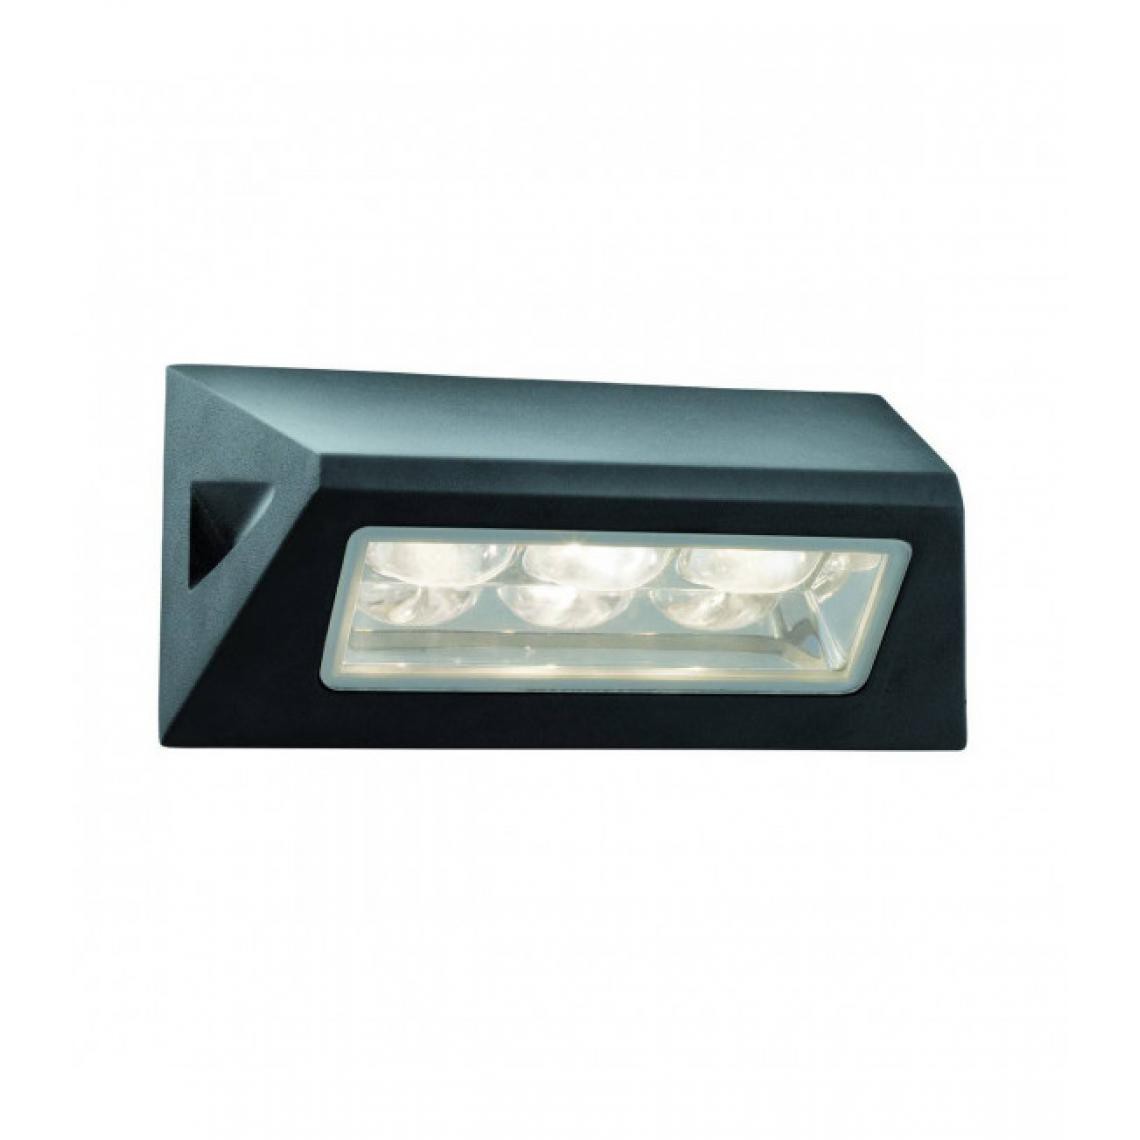 Searchlight - Applique Led Outdoor 11 cm, en aluminium et verre, noir - Applique, hublot